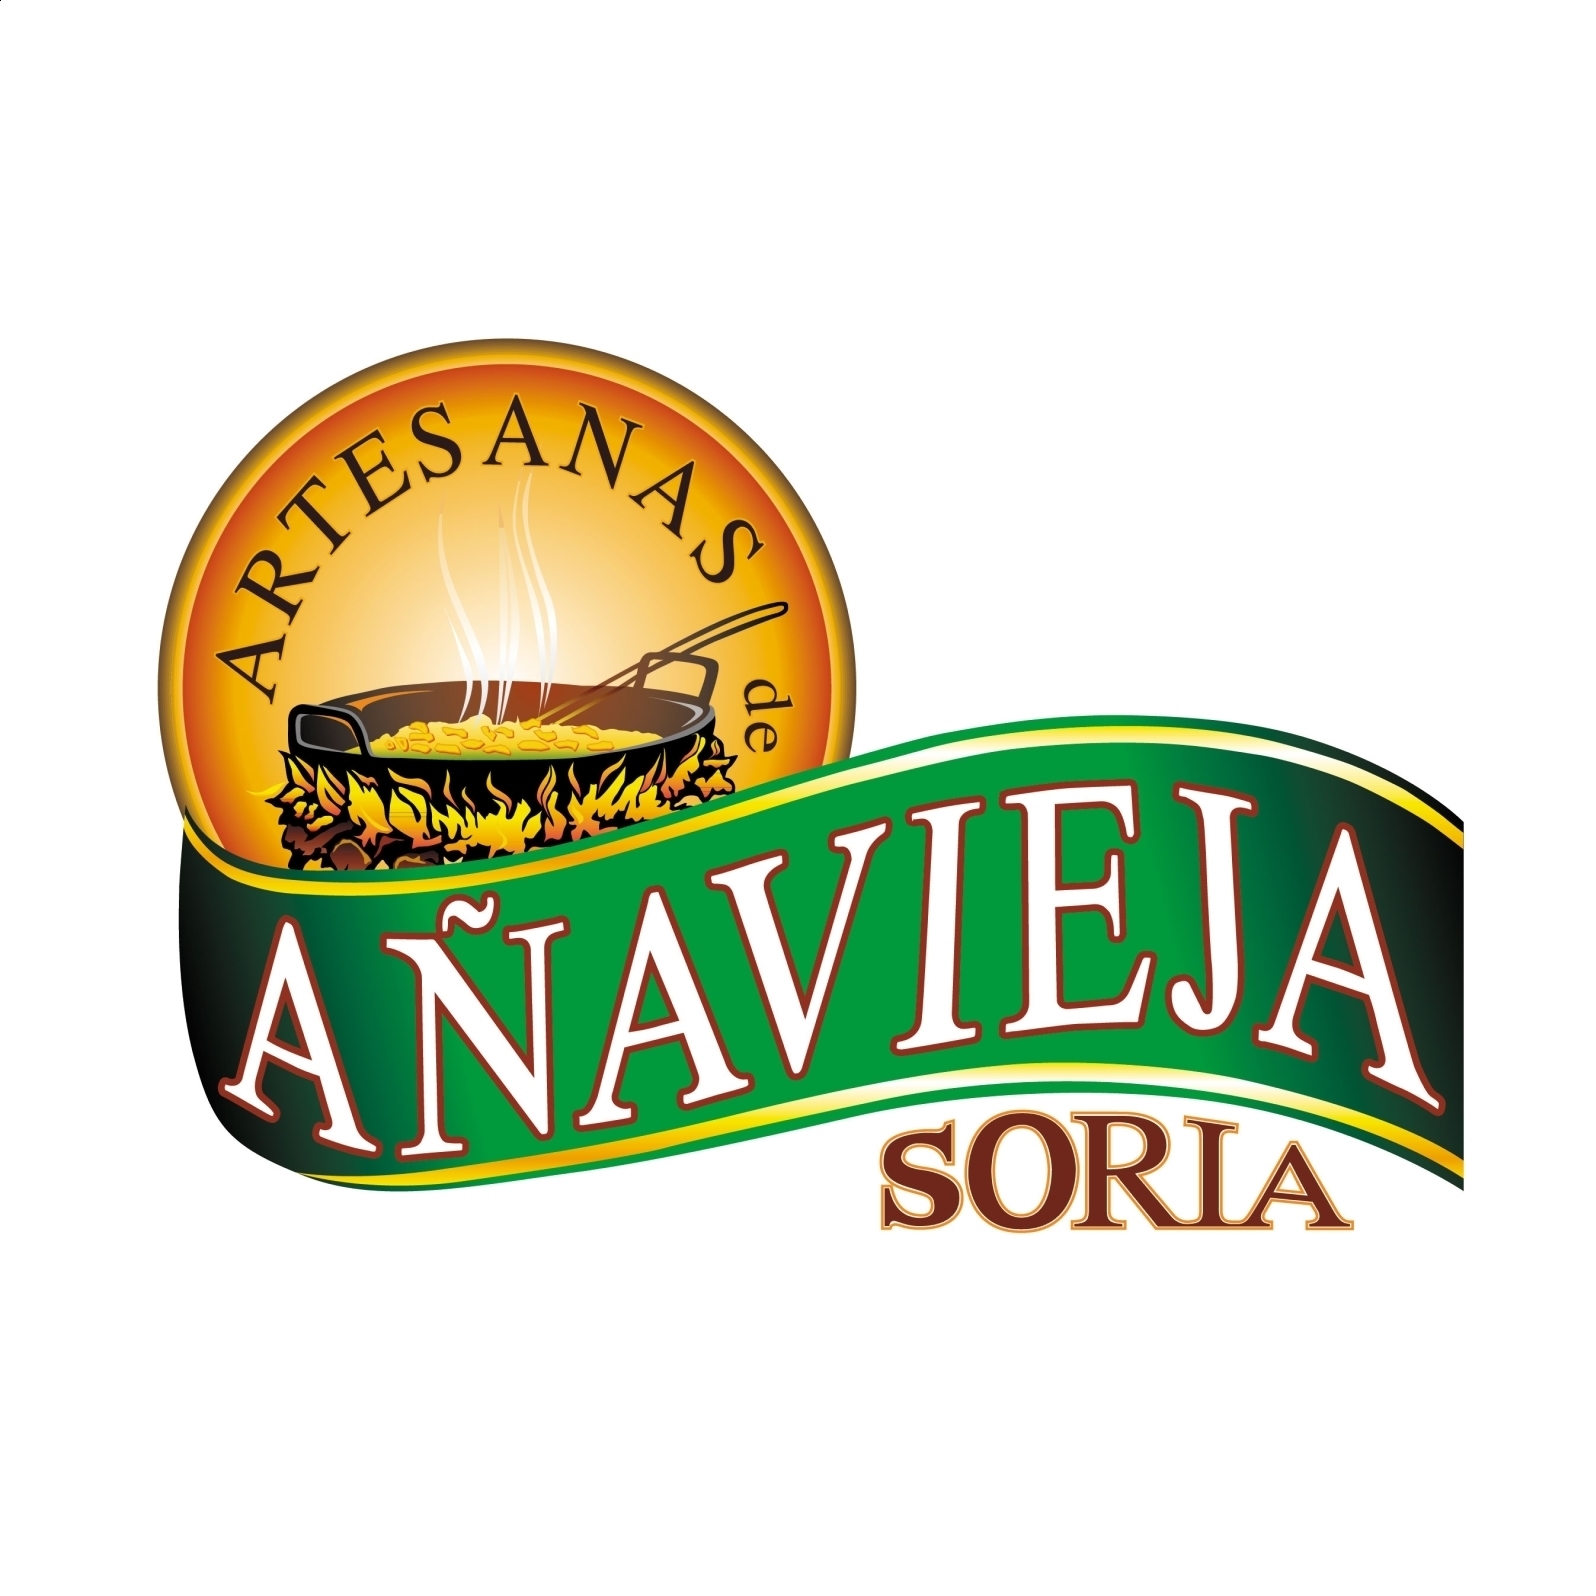 Aperitivos de Añavieja - Patatas fritas en Aceite de Oliva sin sal 120g, 10uds